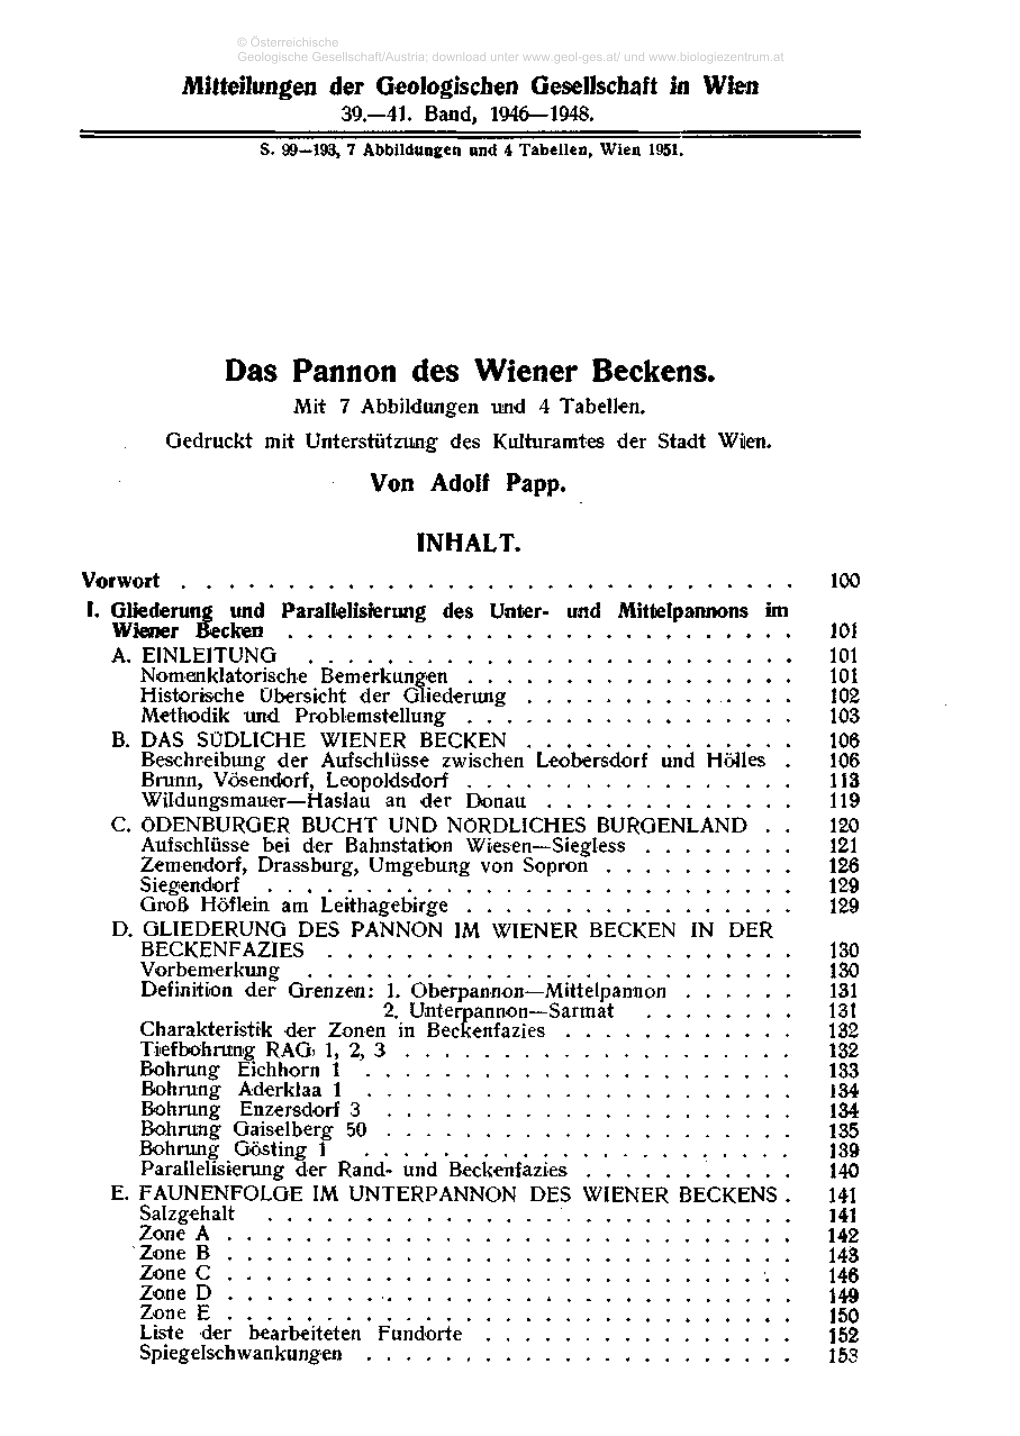 Das Pannon Des Wiener Beckens. Mit 7 Abbildungen Und 4 Tabellen